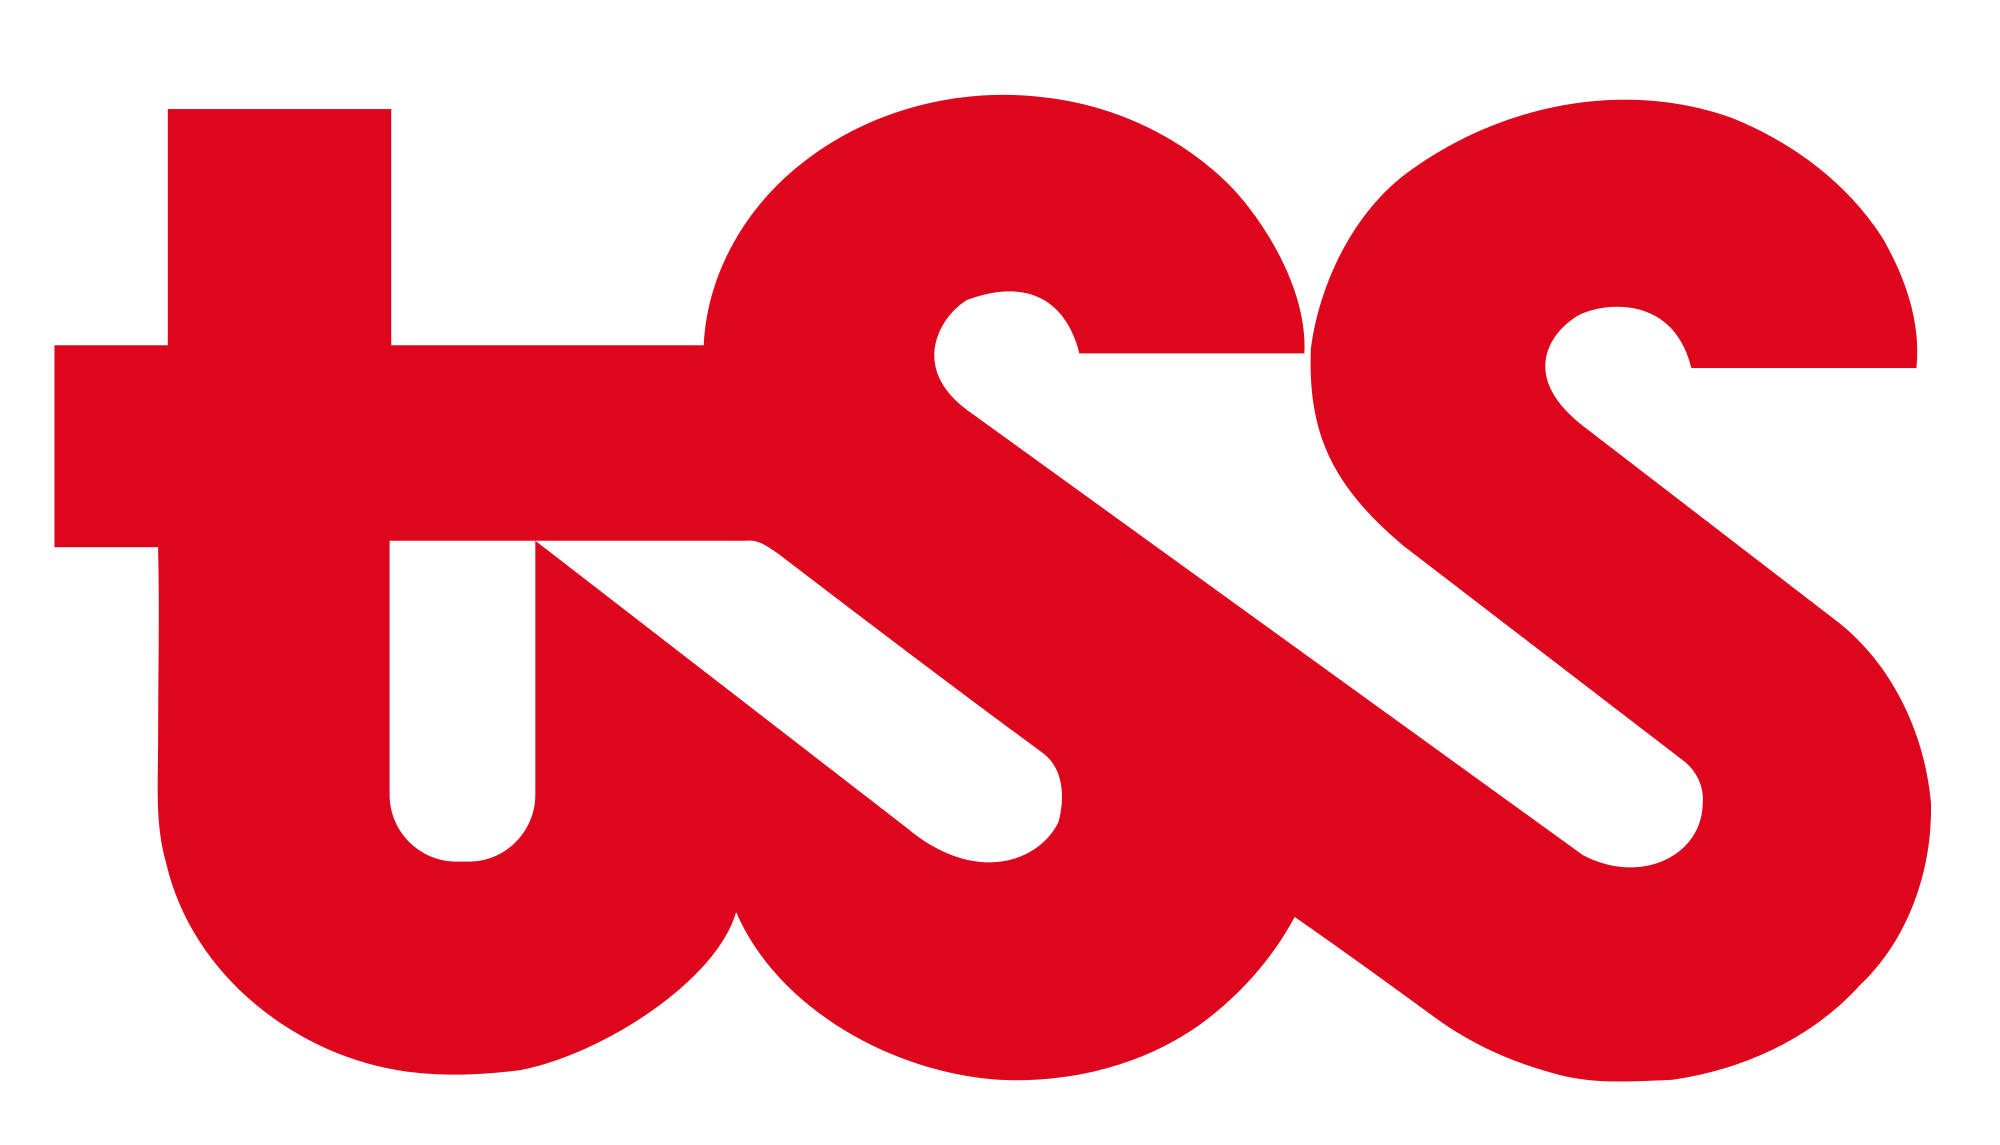 TSS Logo - LogoDix